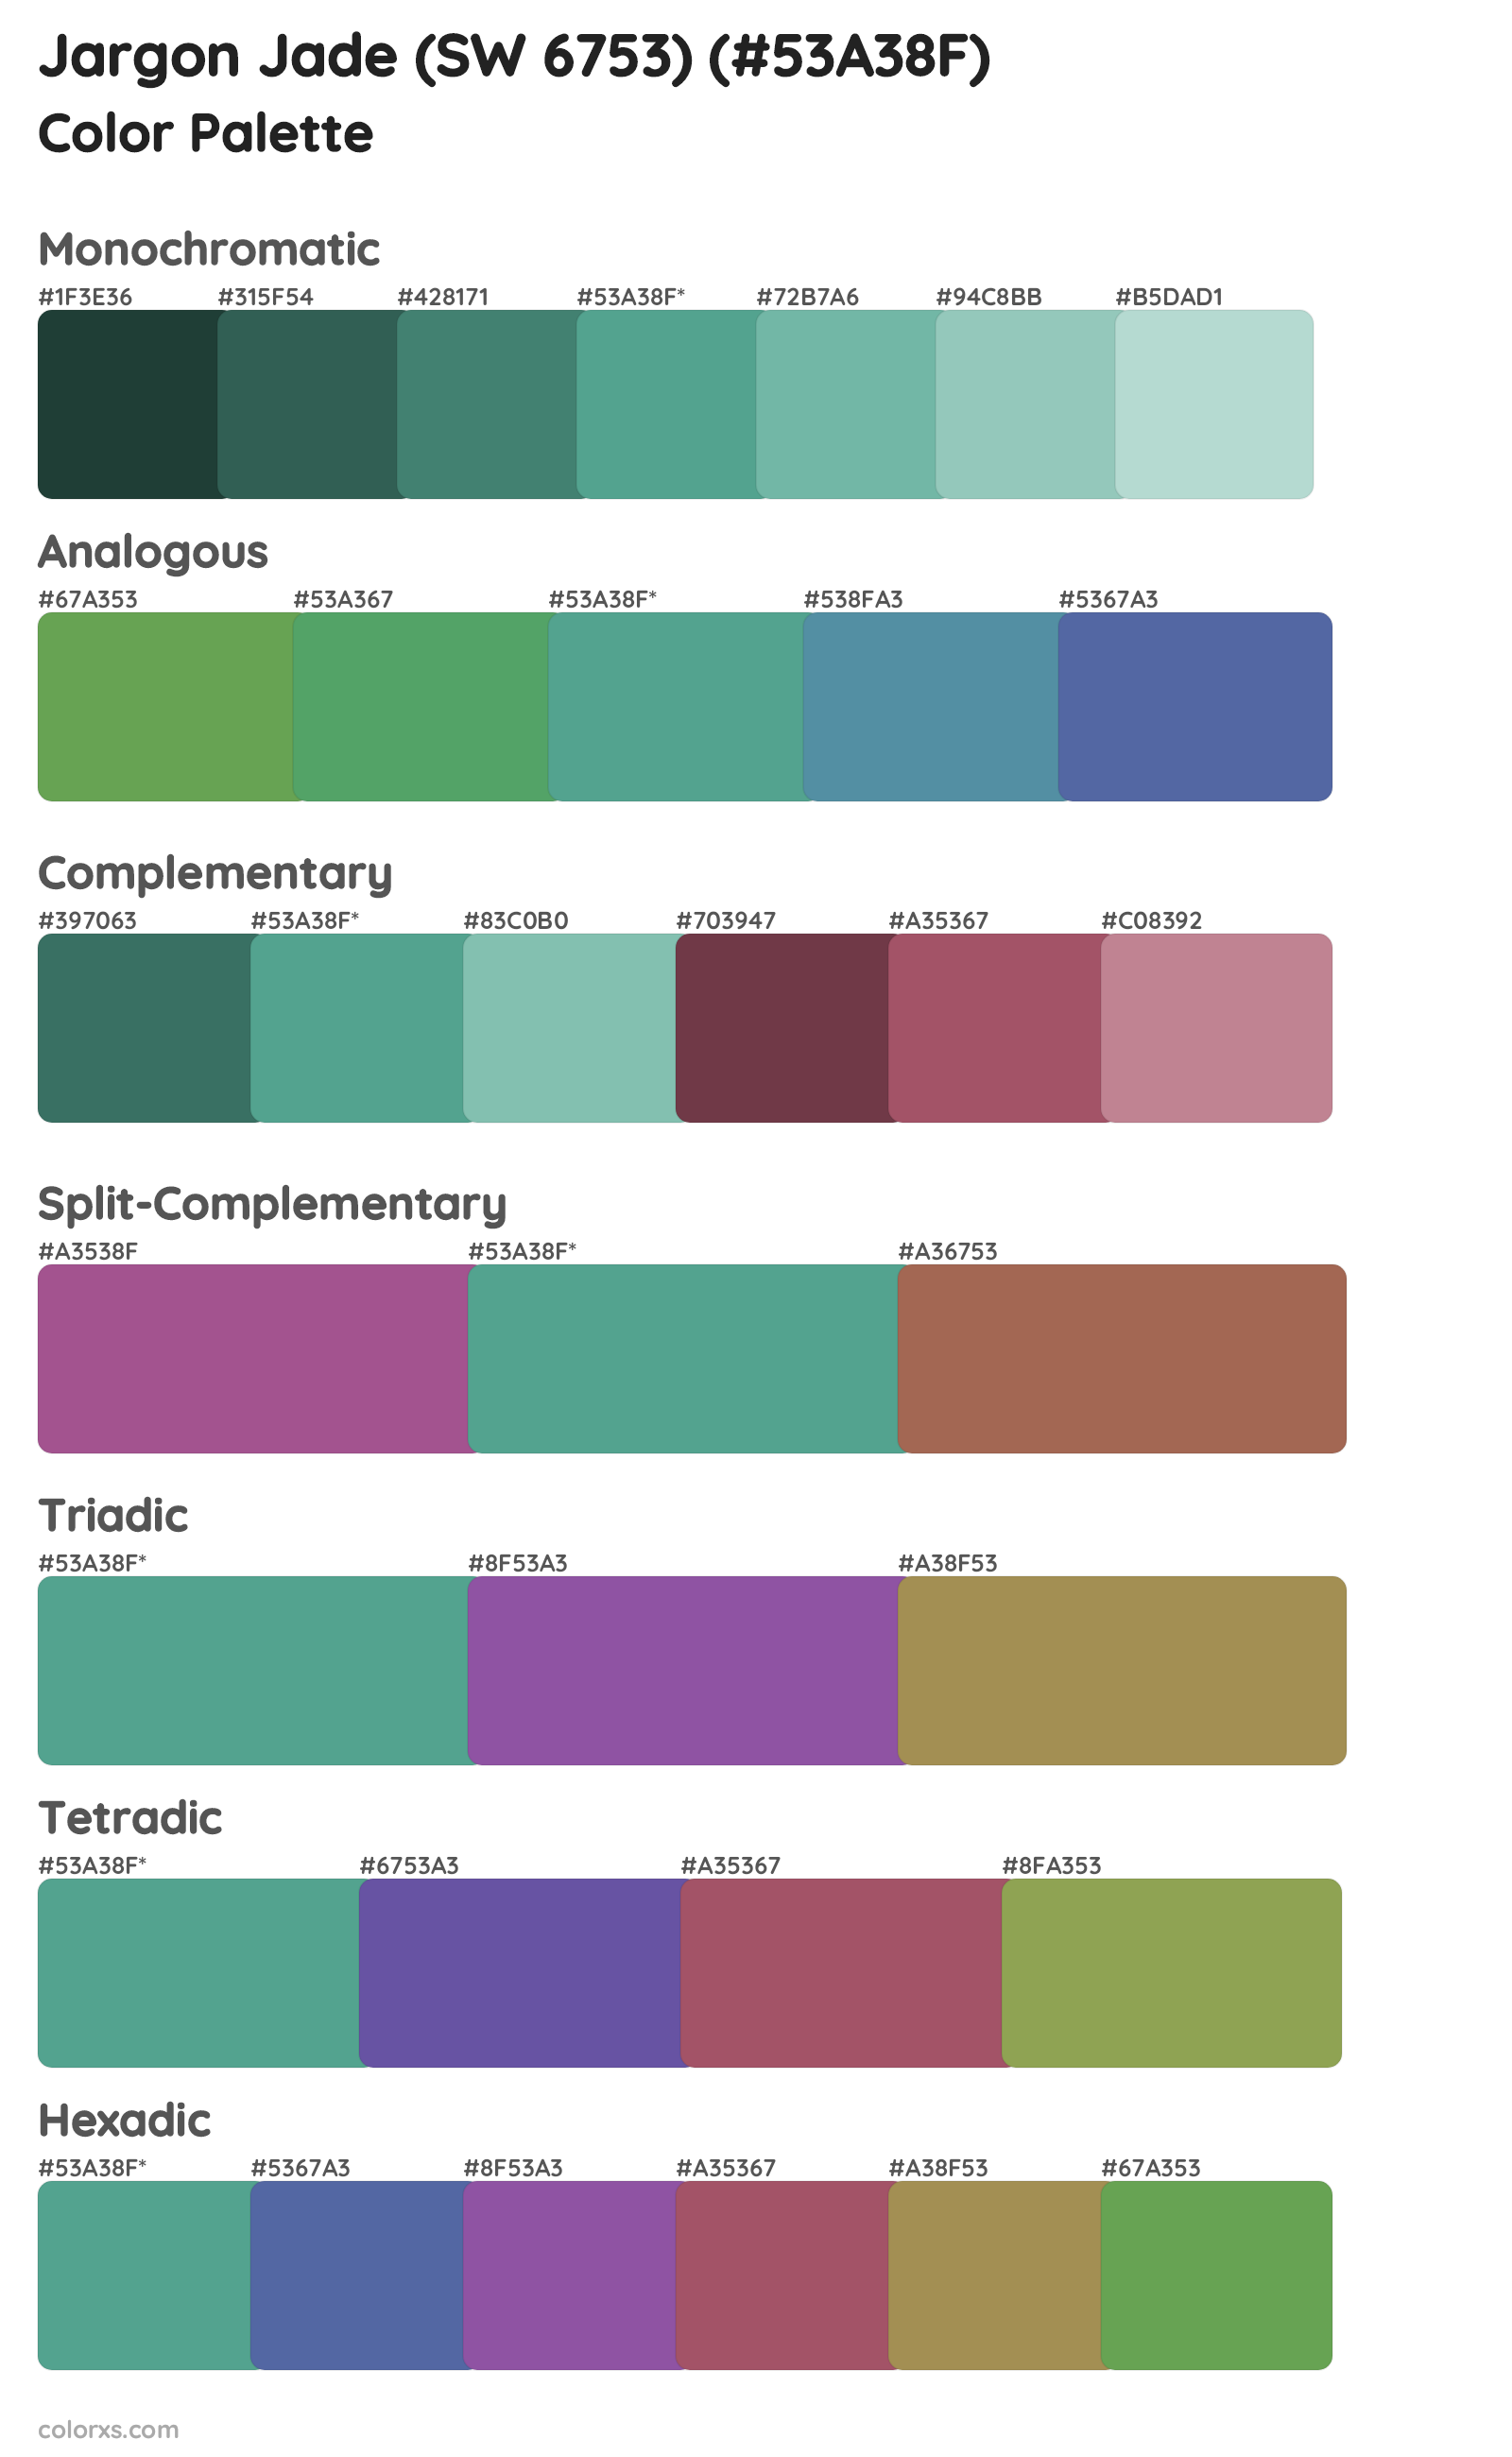 Jargon Jade (SW 6753) Color Scheme Palettes